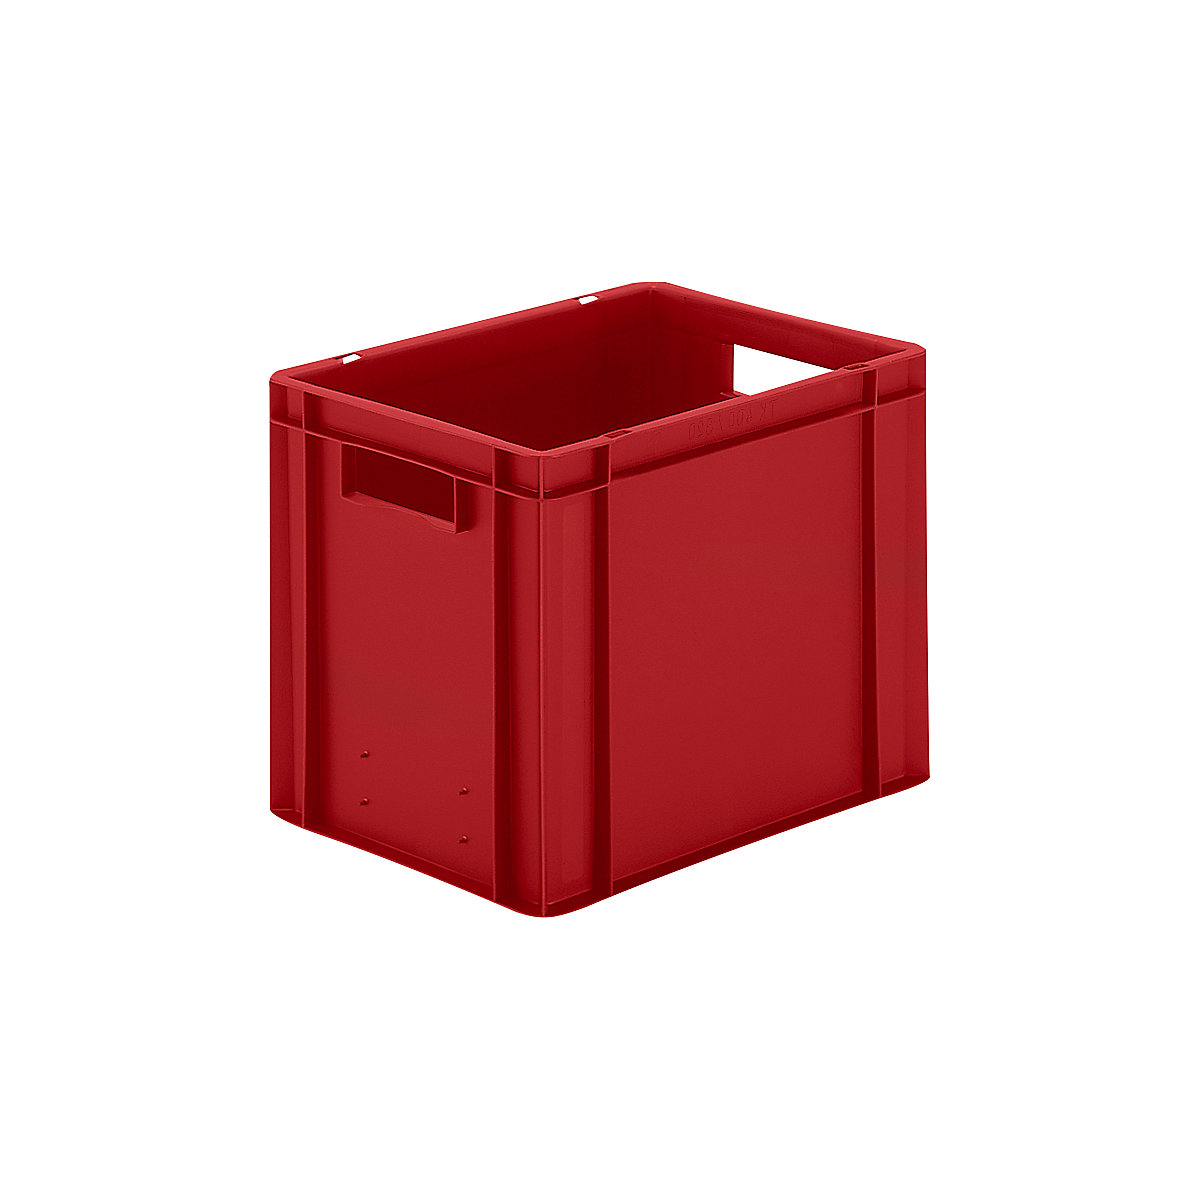 Spremnik za slaganje u EURO formatu, zatvorene stijenke i dno, DxŠxV 400 x 300 x 320 mm, u crvenoj boji, pak. 5 kom.